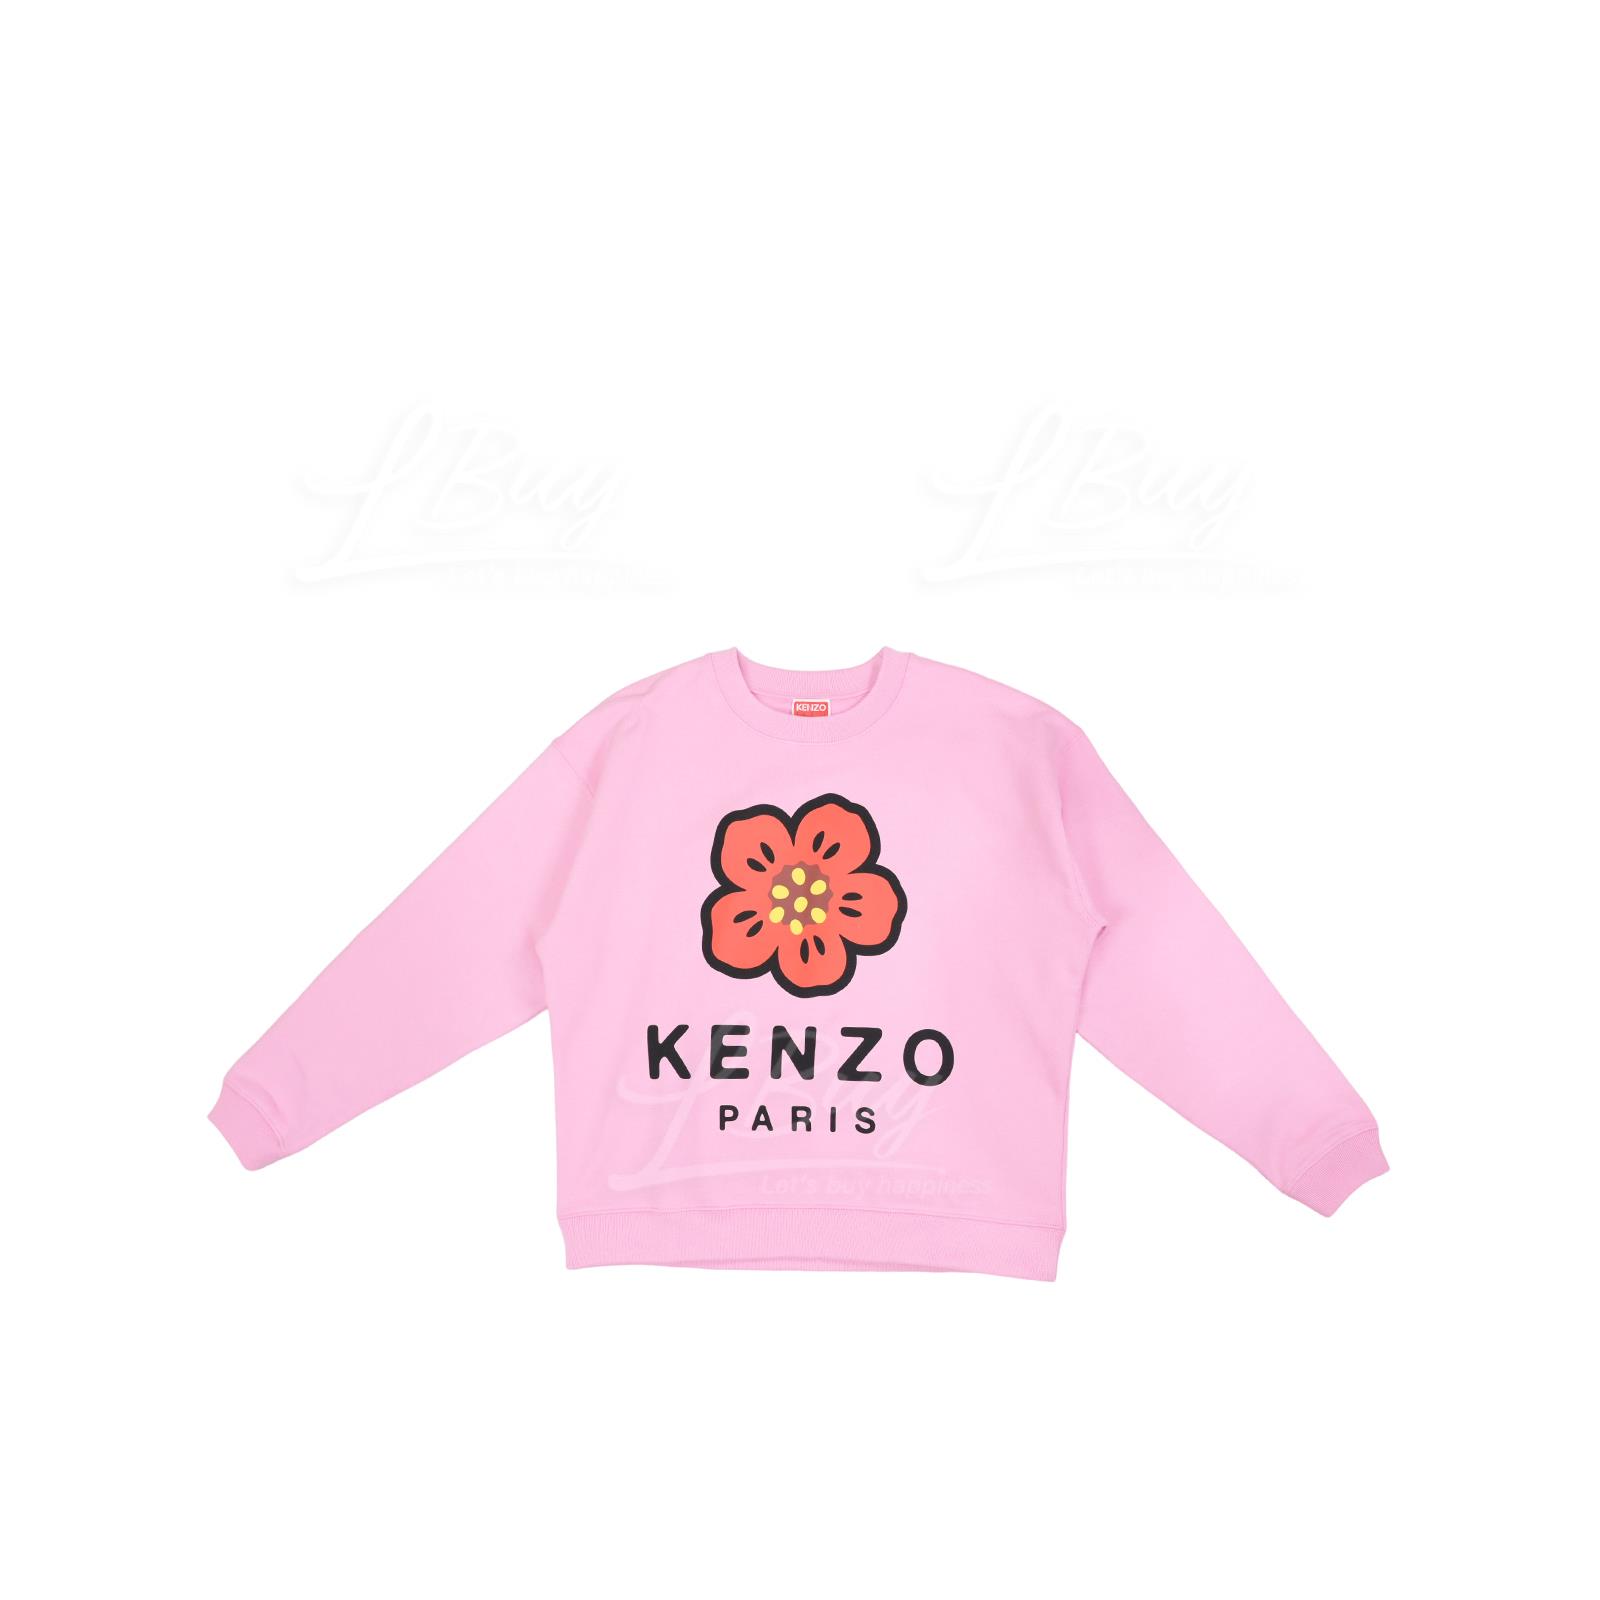 KENZO Boke Flower Ladies Sweatshirt Pink  Long Sleeve